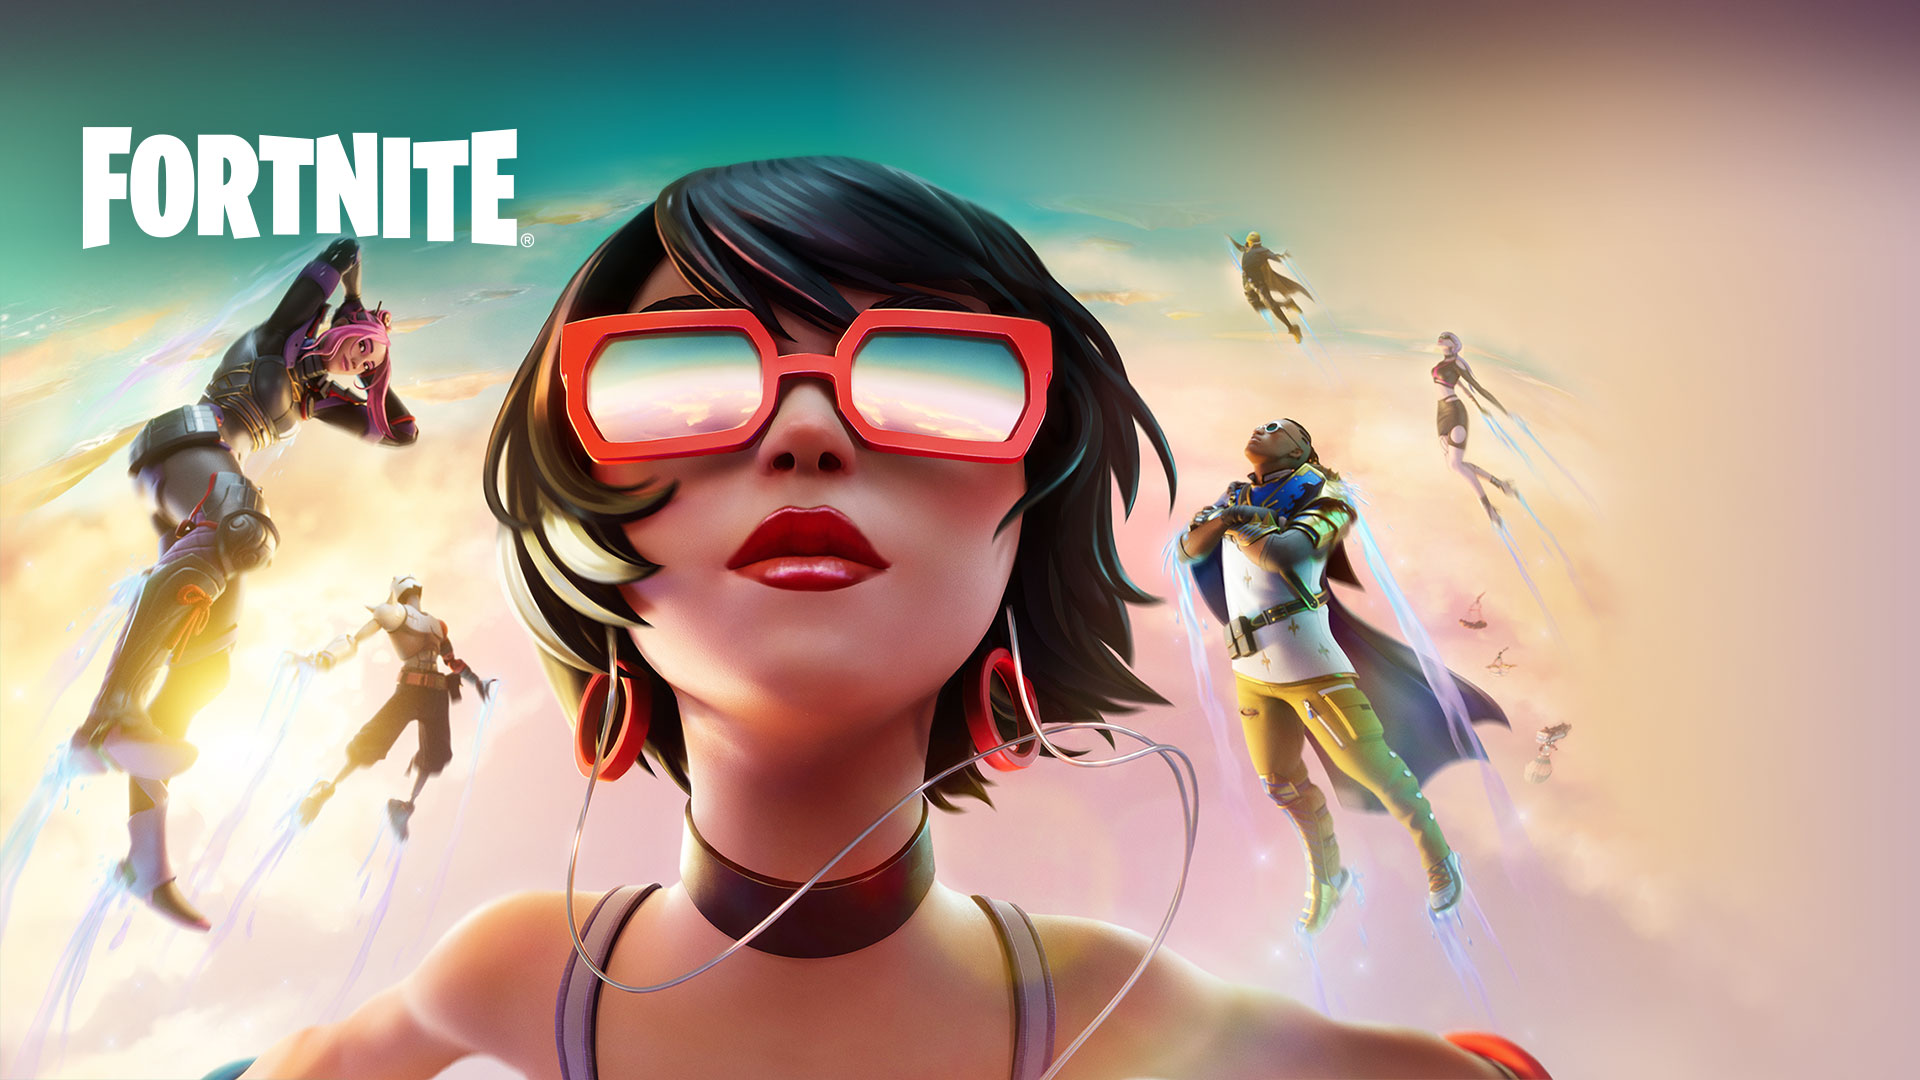 Fortnite, uma menina de óculos de sol vermelhos flutua nas nuvens com outros personagens contra um céu de cor pastel.